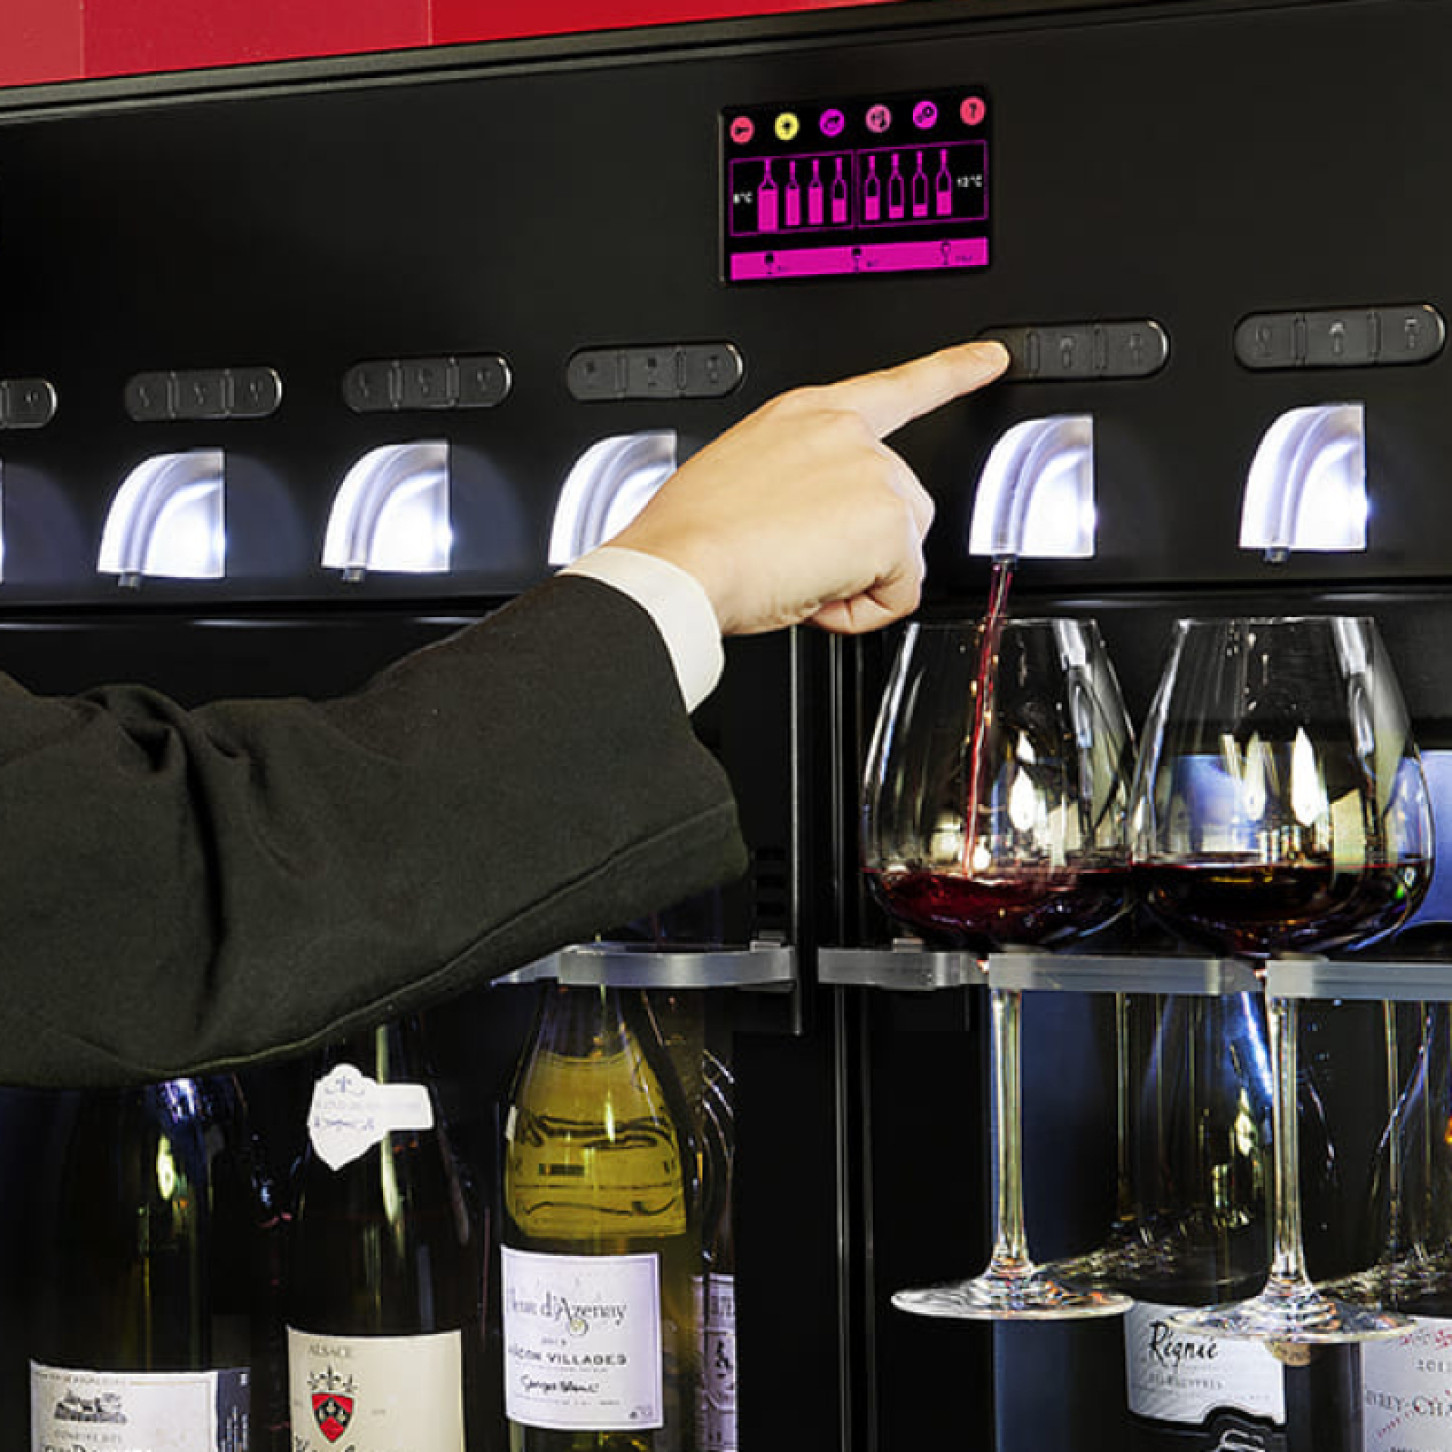 Distributeur de vin et solution de service du vin au verre. Mise à température : système avec compartiments de température indépendants qui refroidit les bouteilles de blanc ou chambre les rouges tout en préservant les qualités du vin après ouverture.